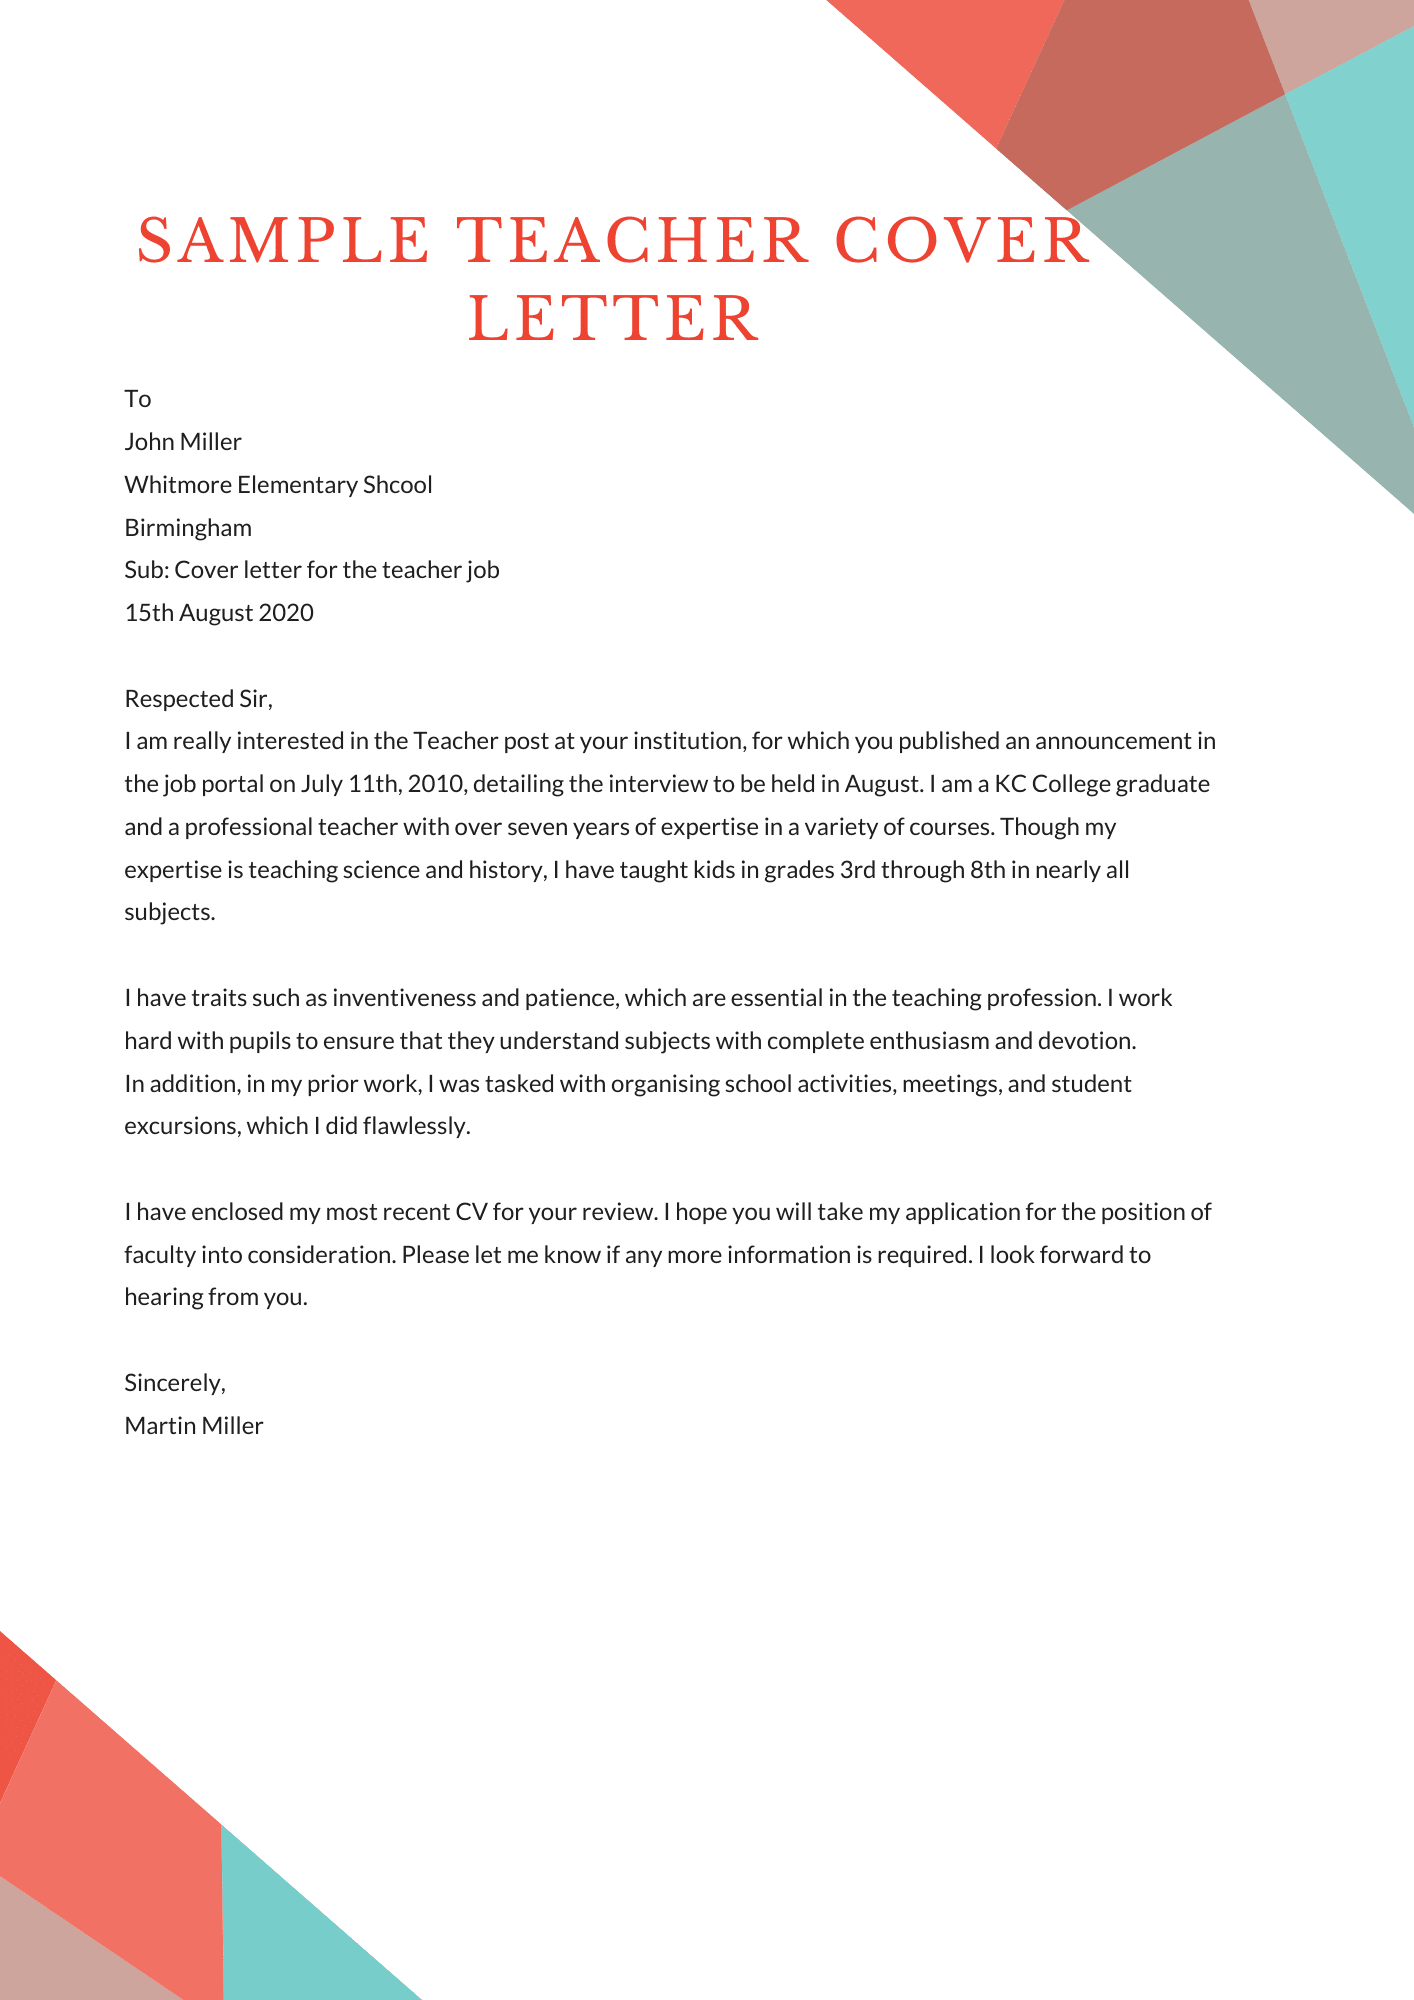 cover letter applying for teacher